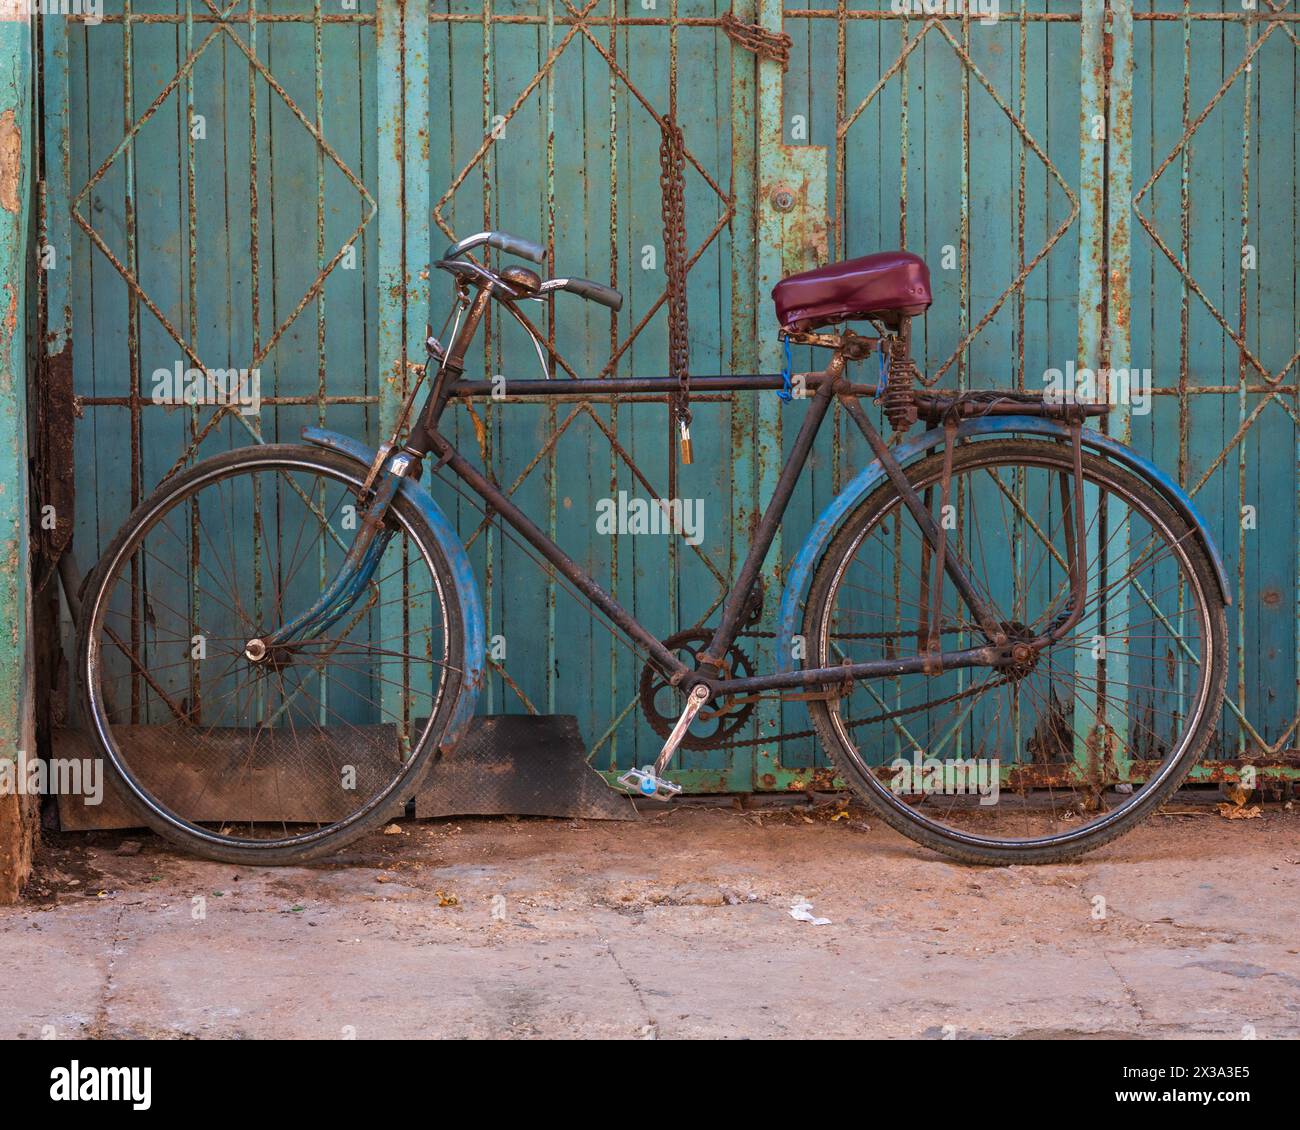 Un vieux vélo rouillé sur un trottoir, penché vers le haut d'une grille métallique dans les rues arrière de la vieille ville, la Havane, Cuba. Banque D'Images